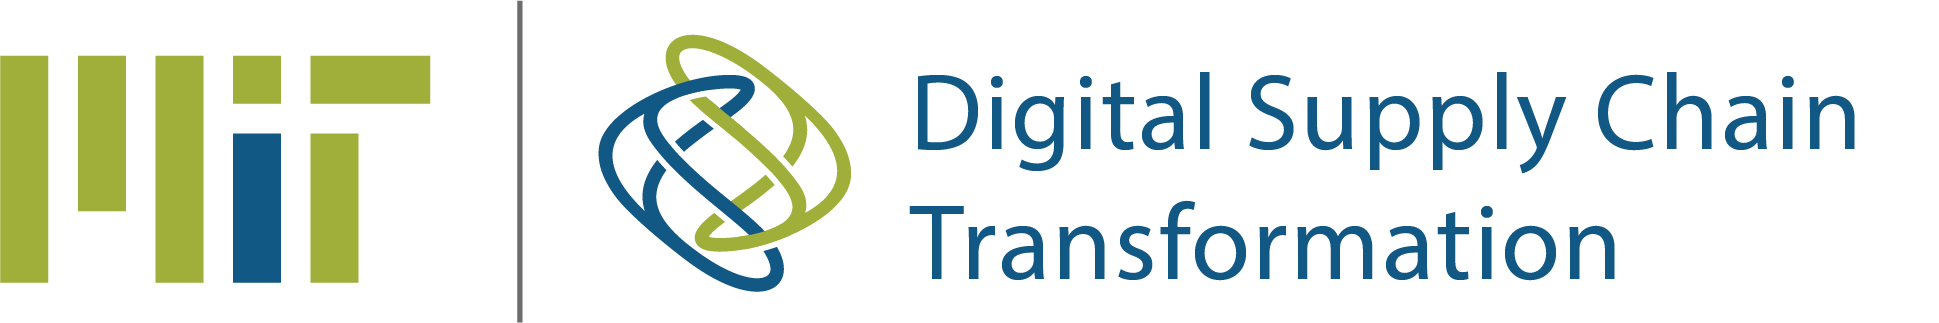 MIT Digital Supply Chain Transformation